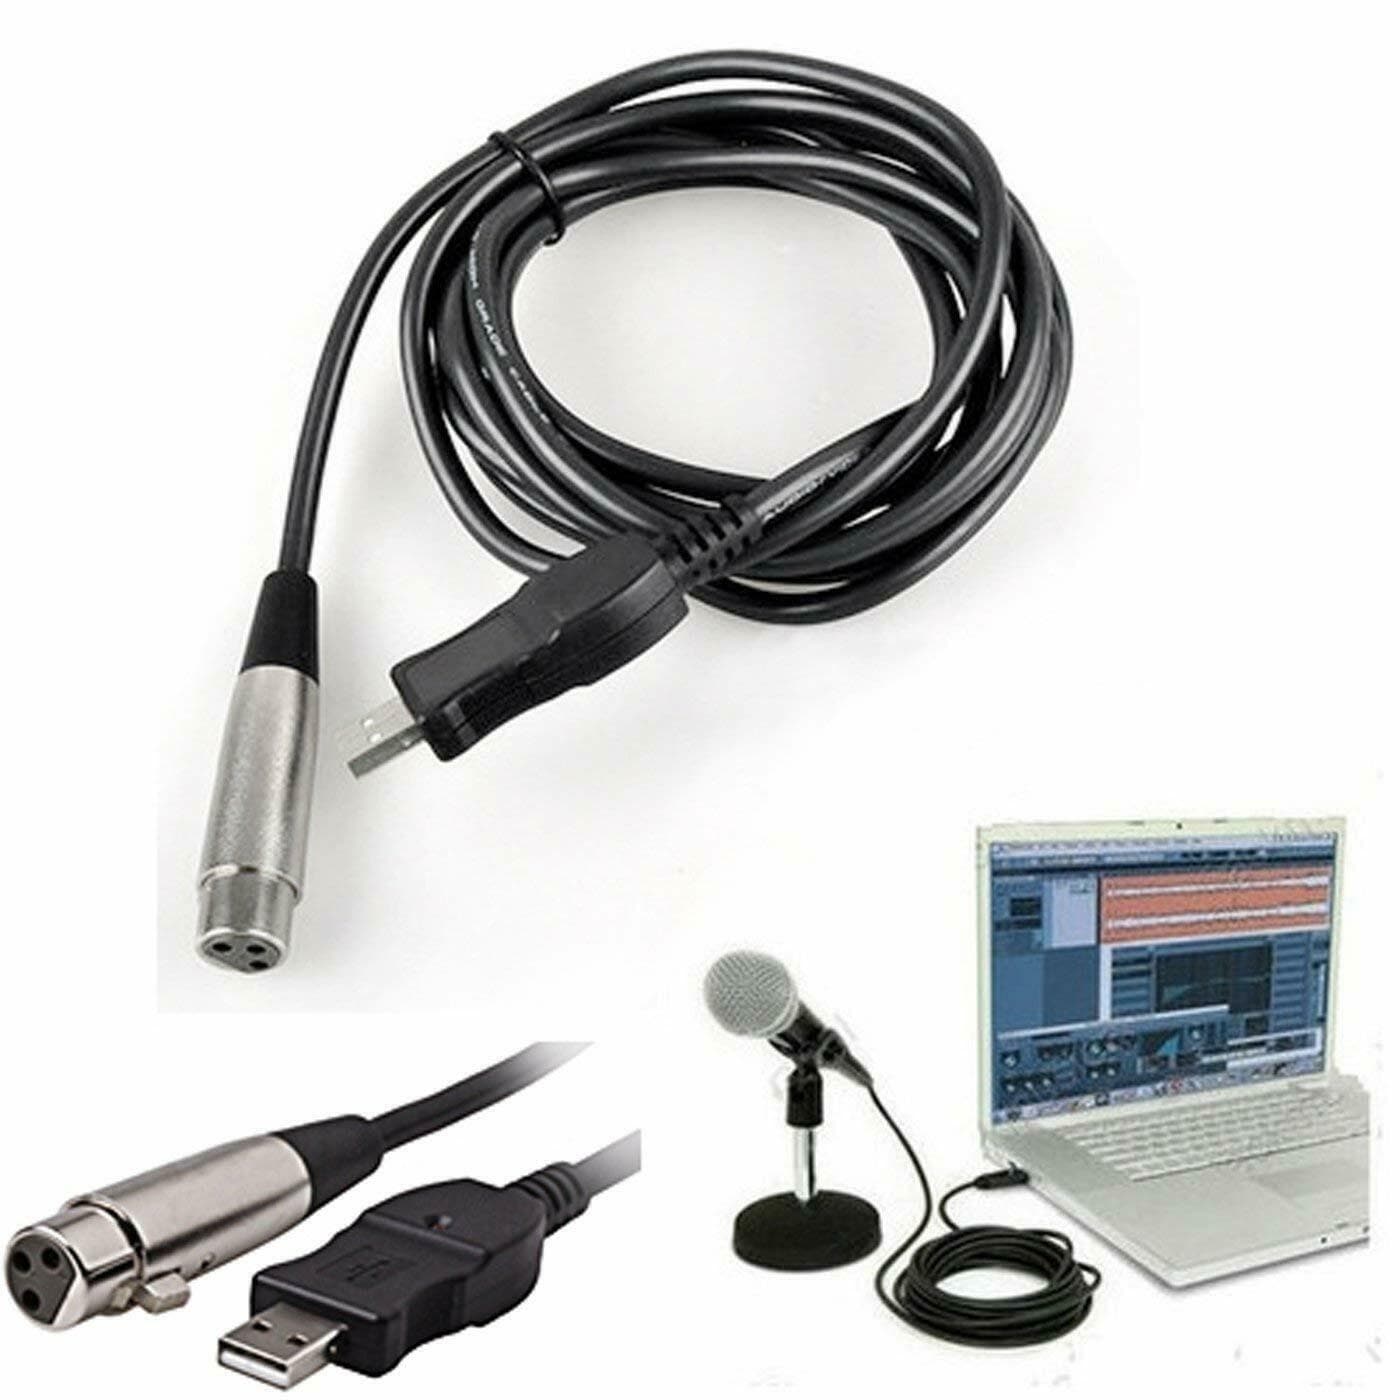 AGPtek 3M Cable de USB 2.0/1.1 para Micrófono MIC Cable de Conectar USB Macho a XLR Hembra